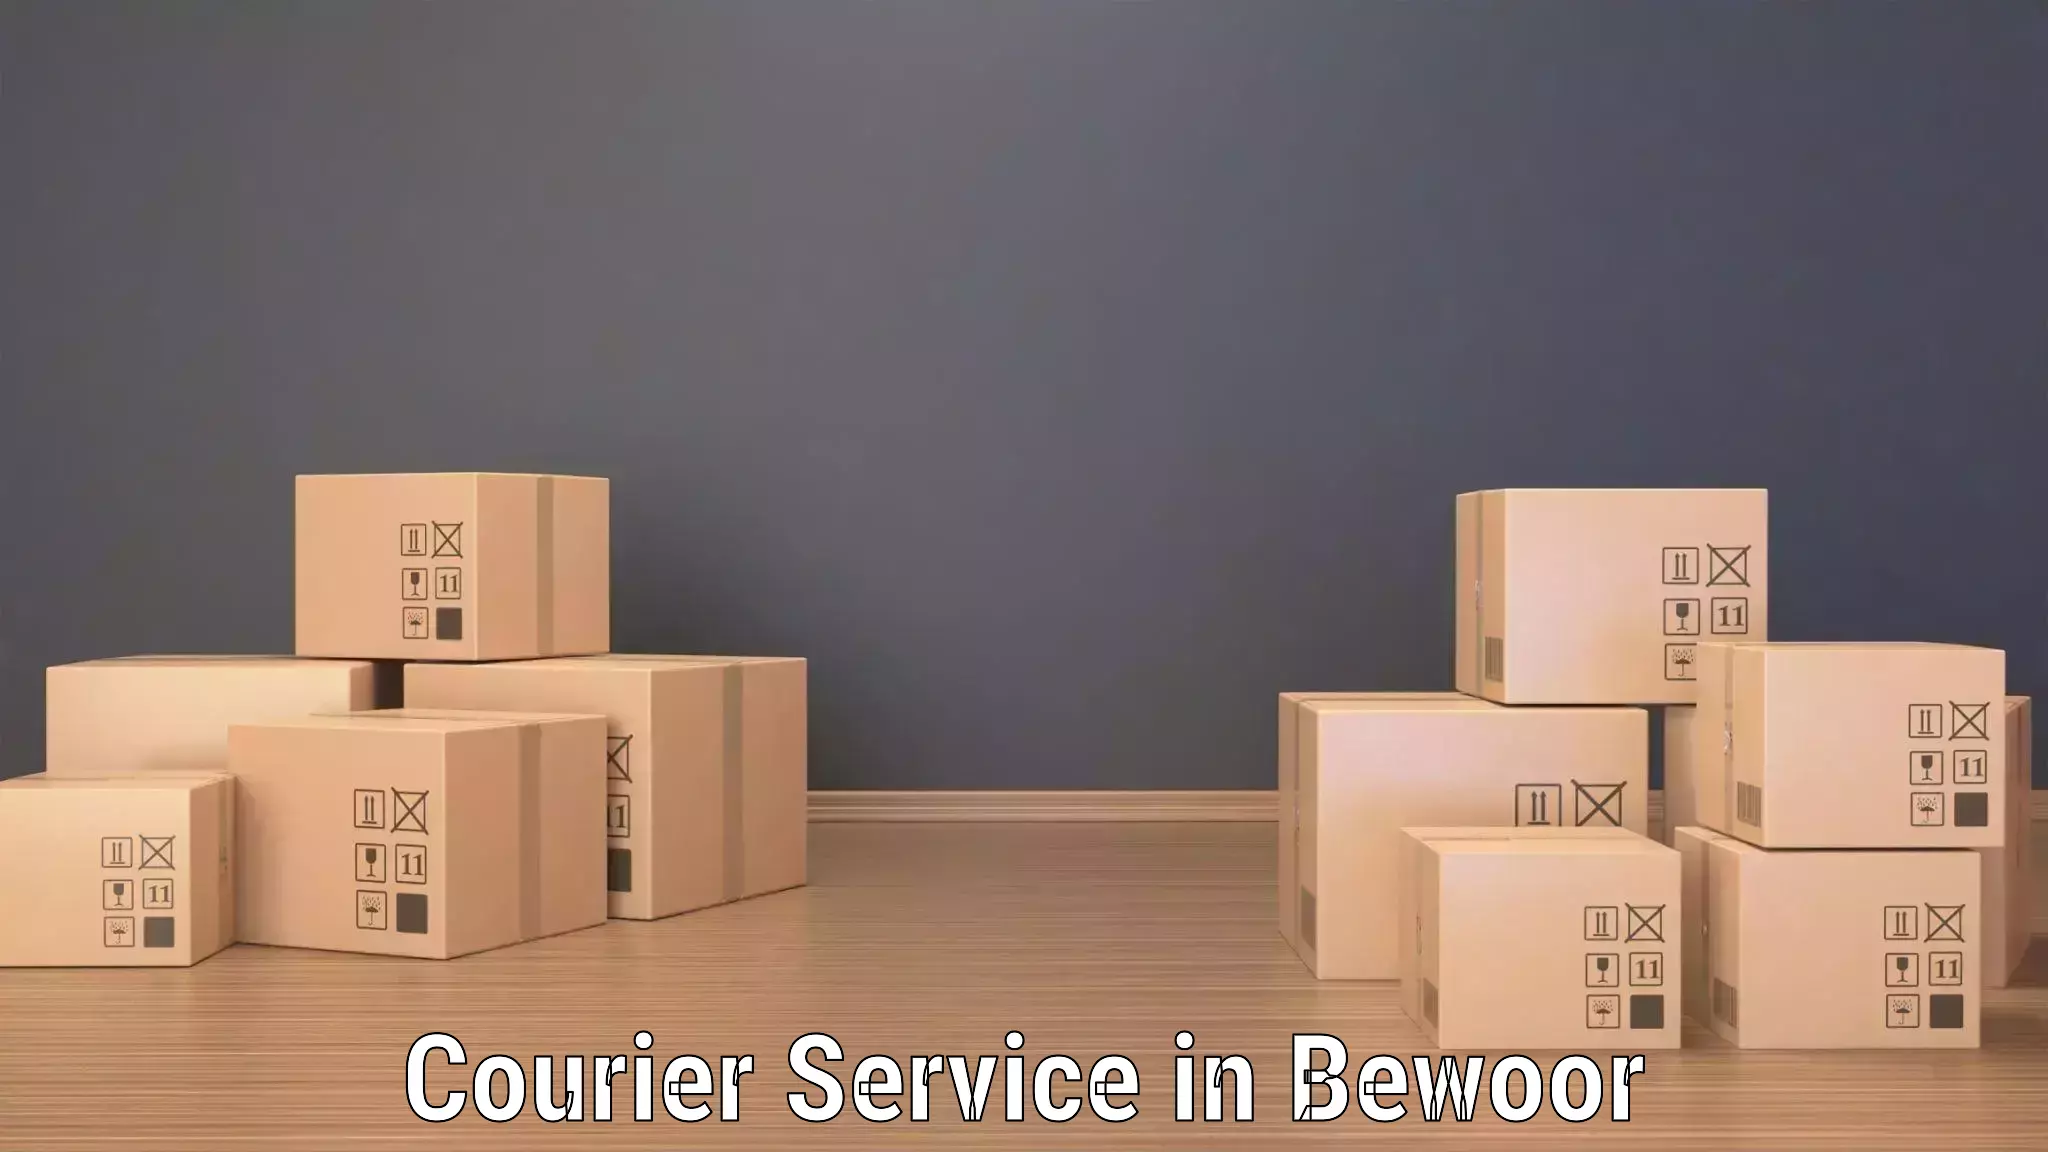 Local courier options in Bewoor